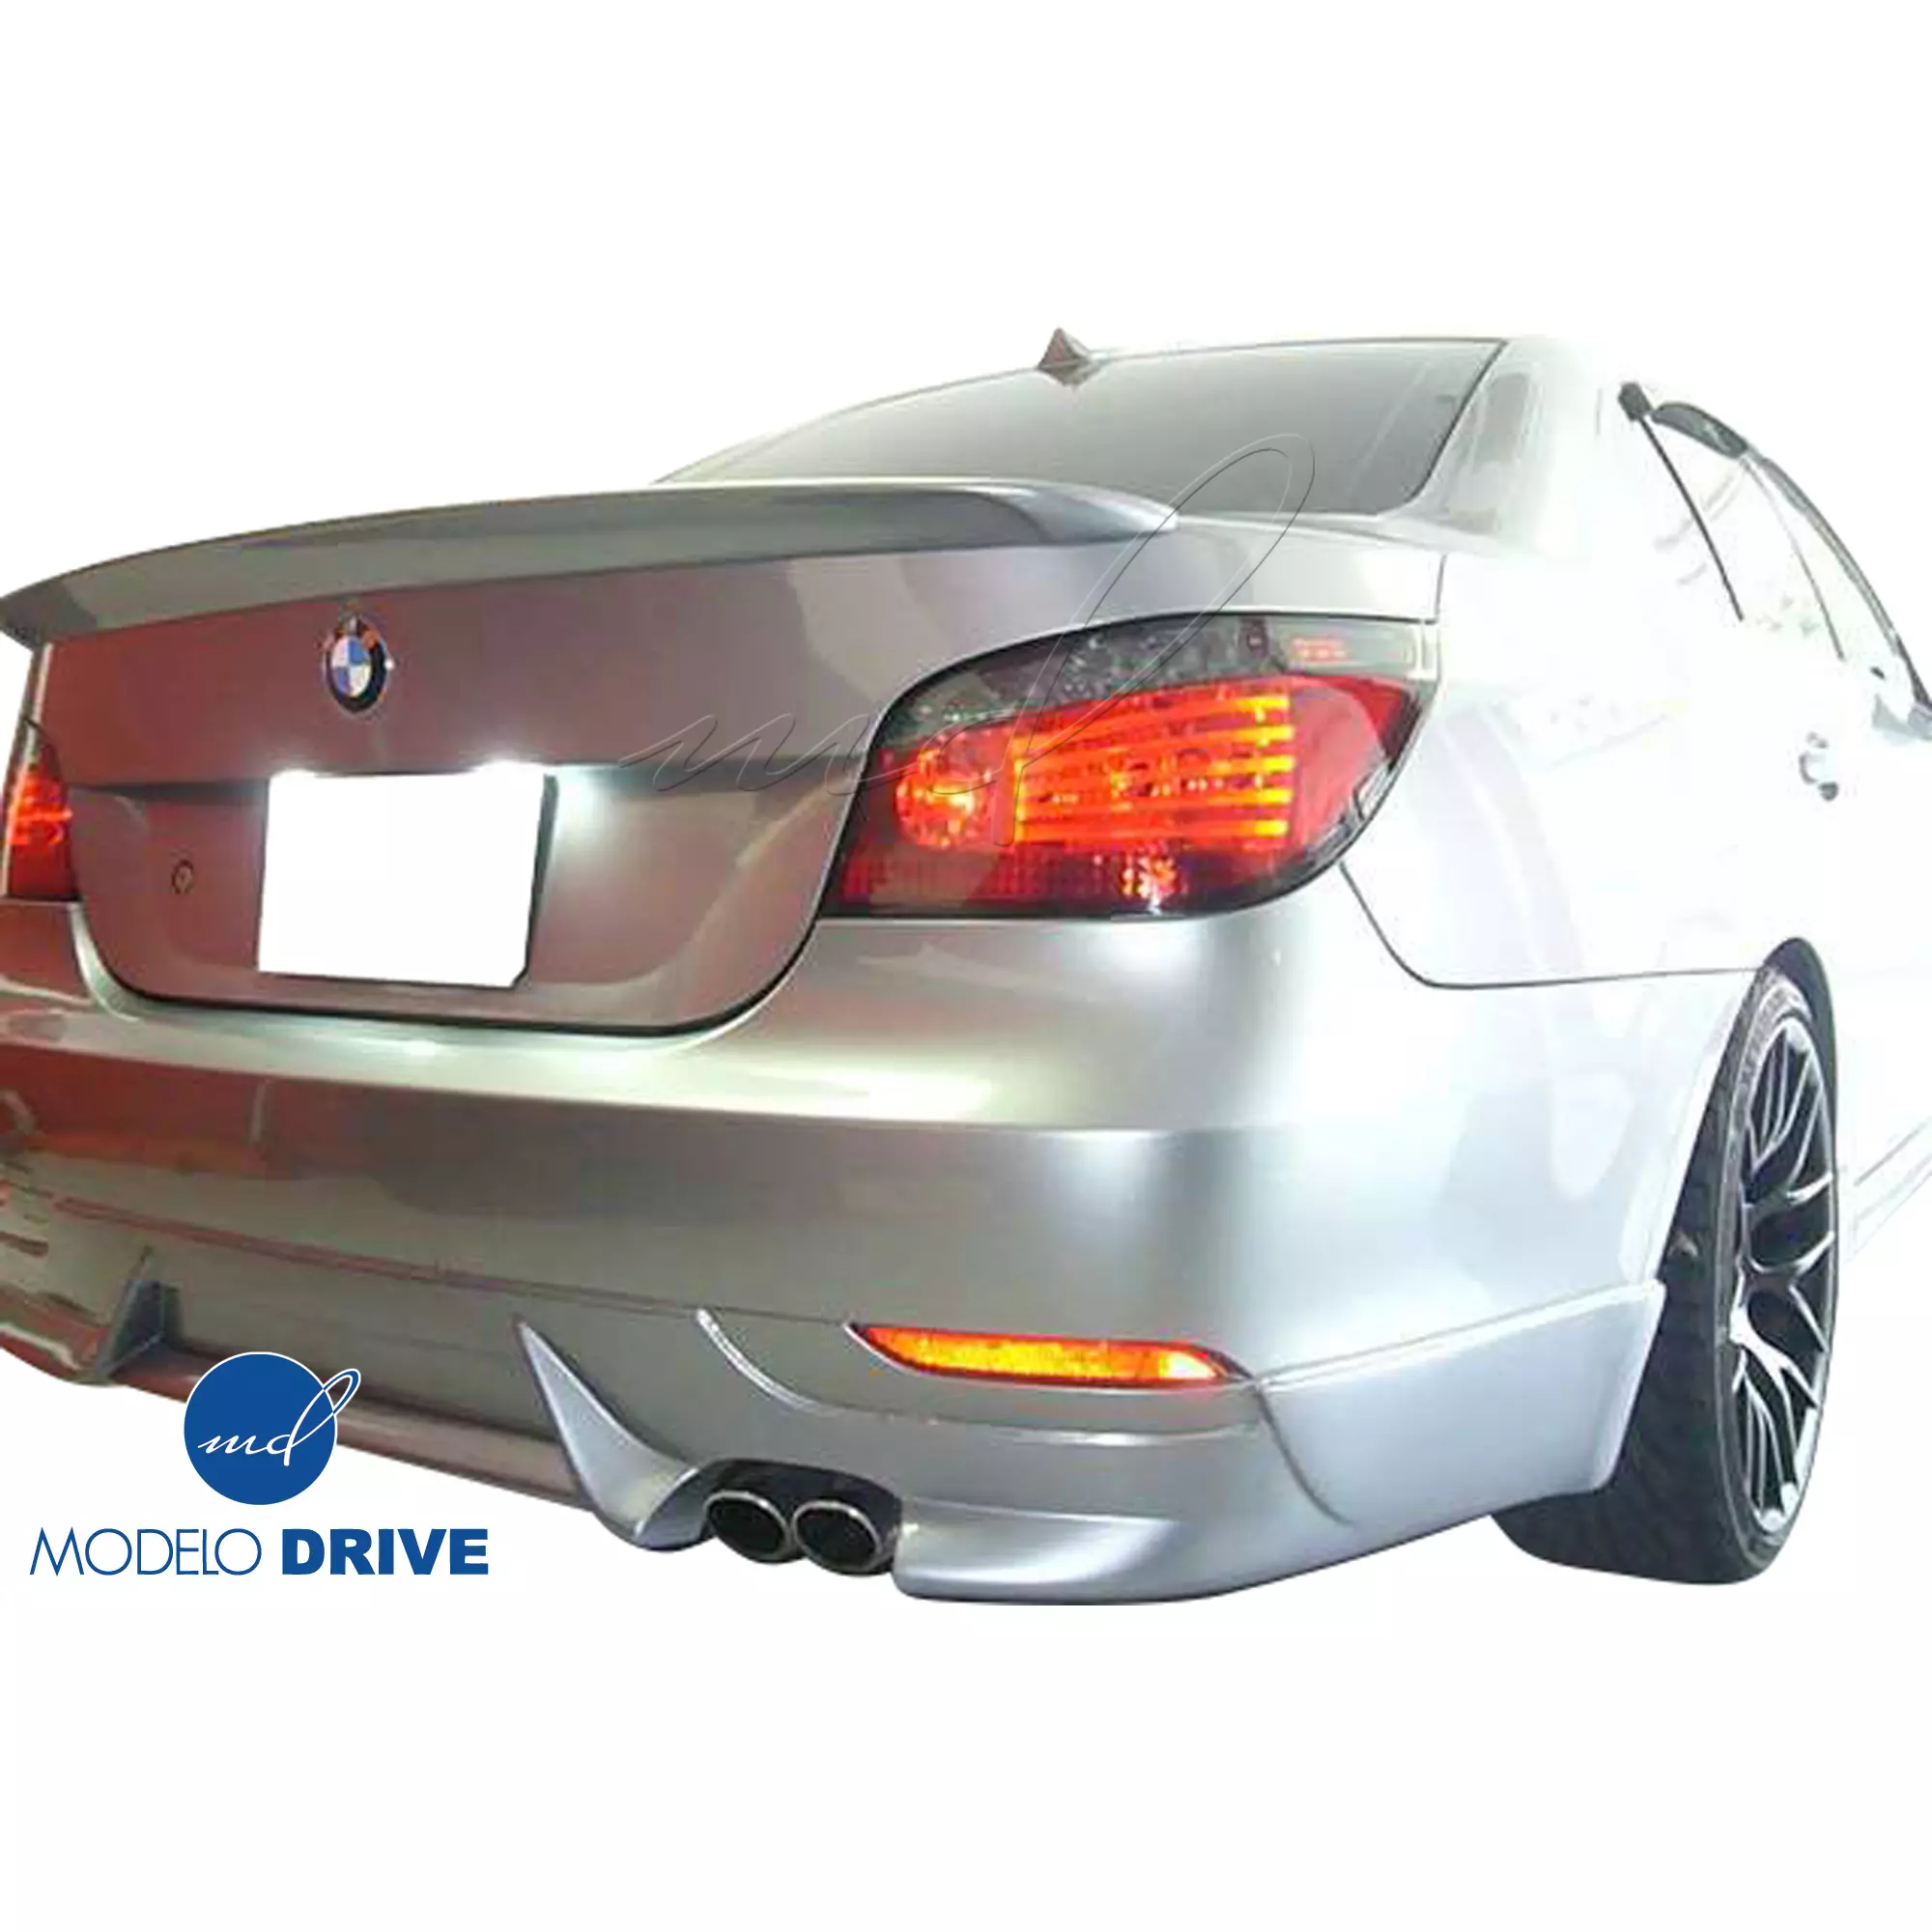 ModeloDrive FRP ASCH Body Kit 4pc > BMW 5-Series E60 2004-2010 > 4dr - Image 9